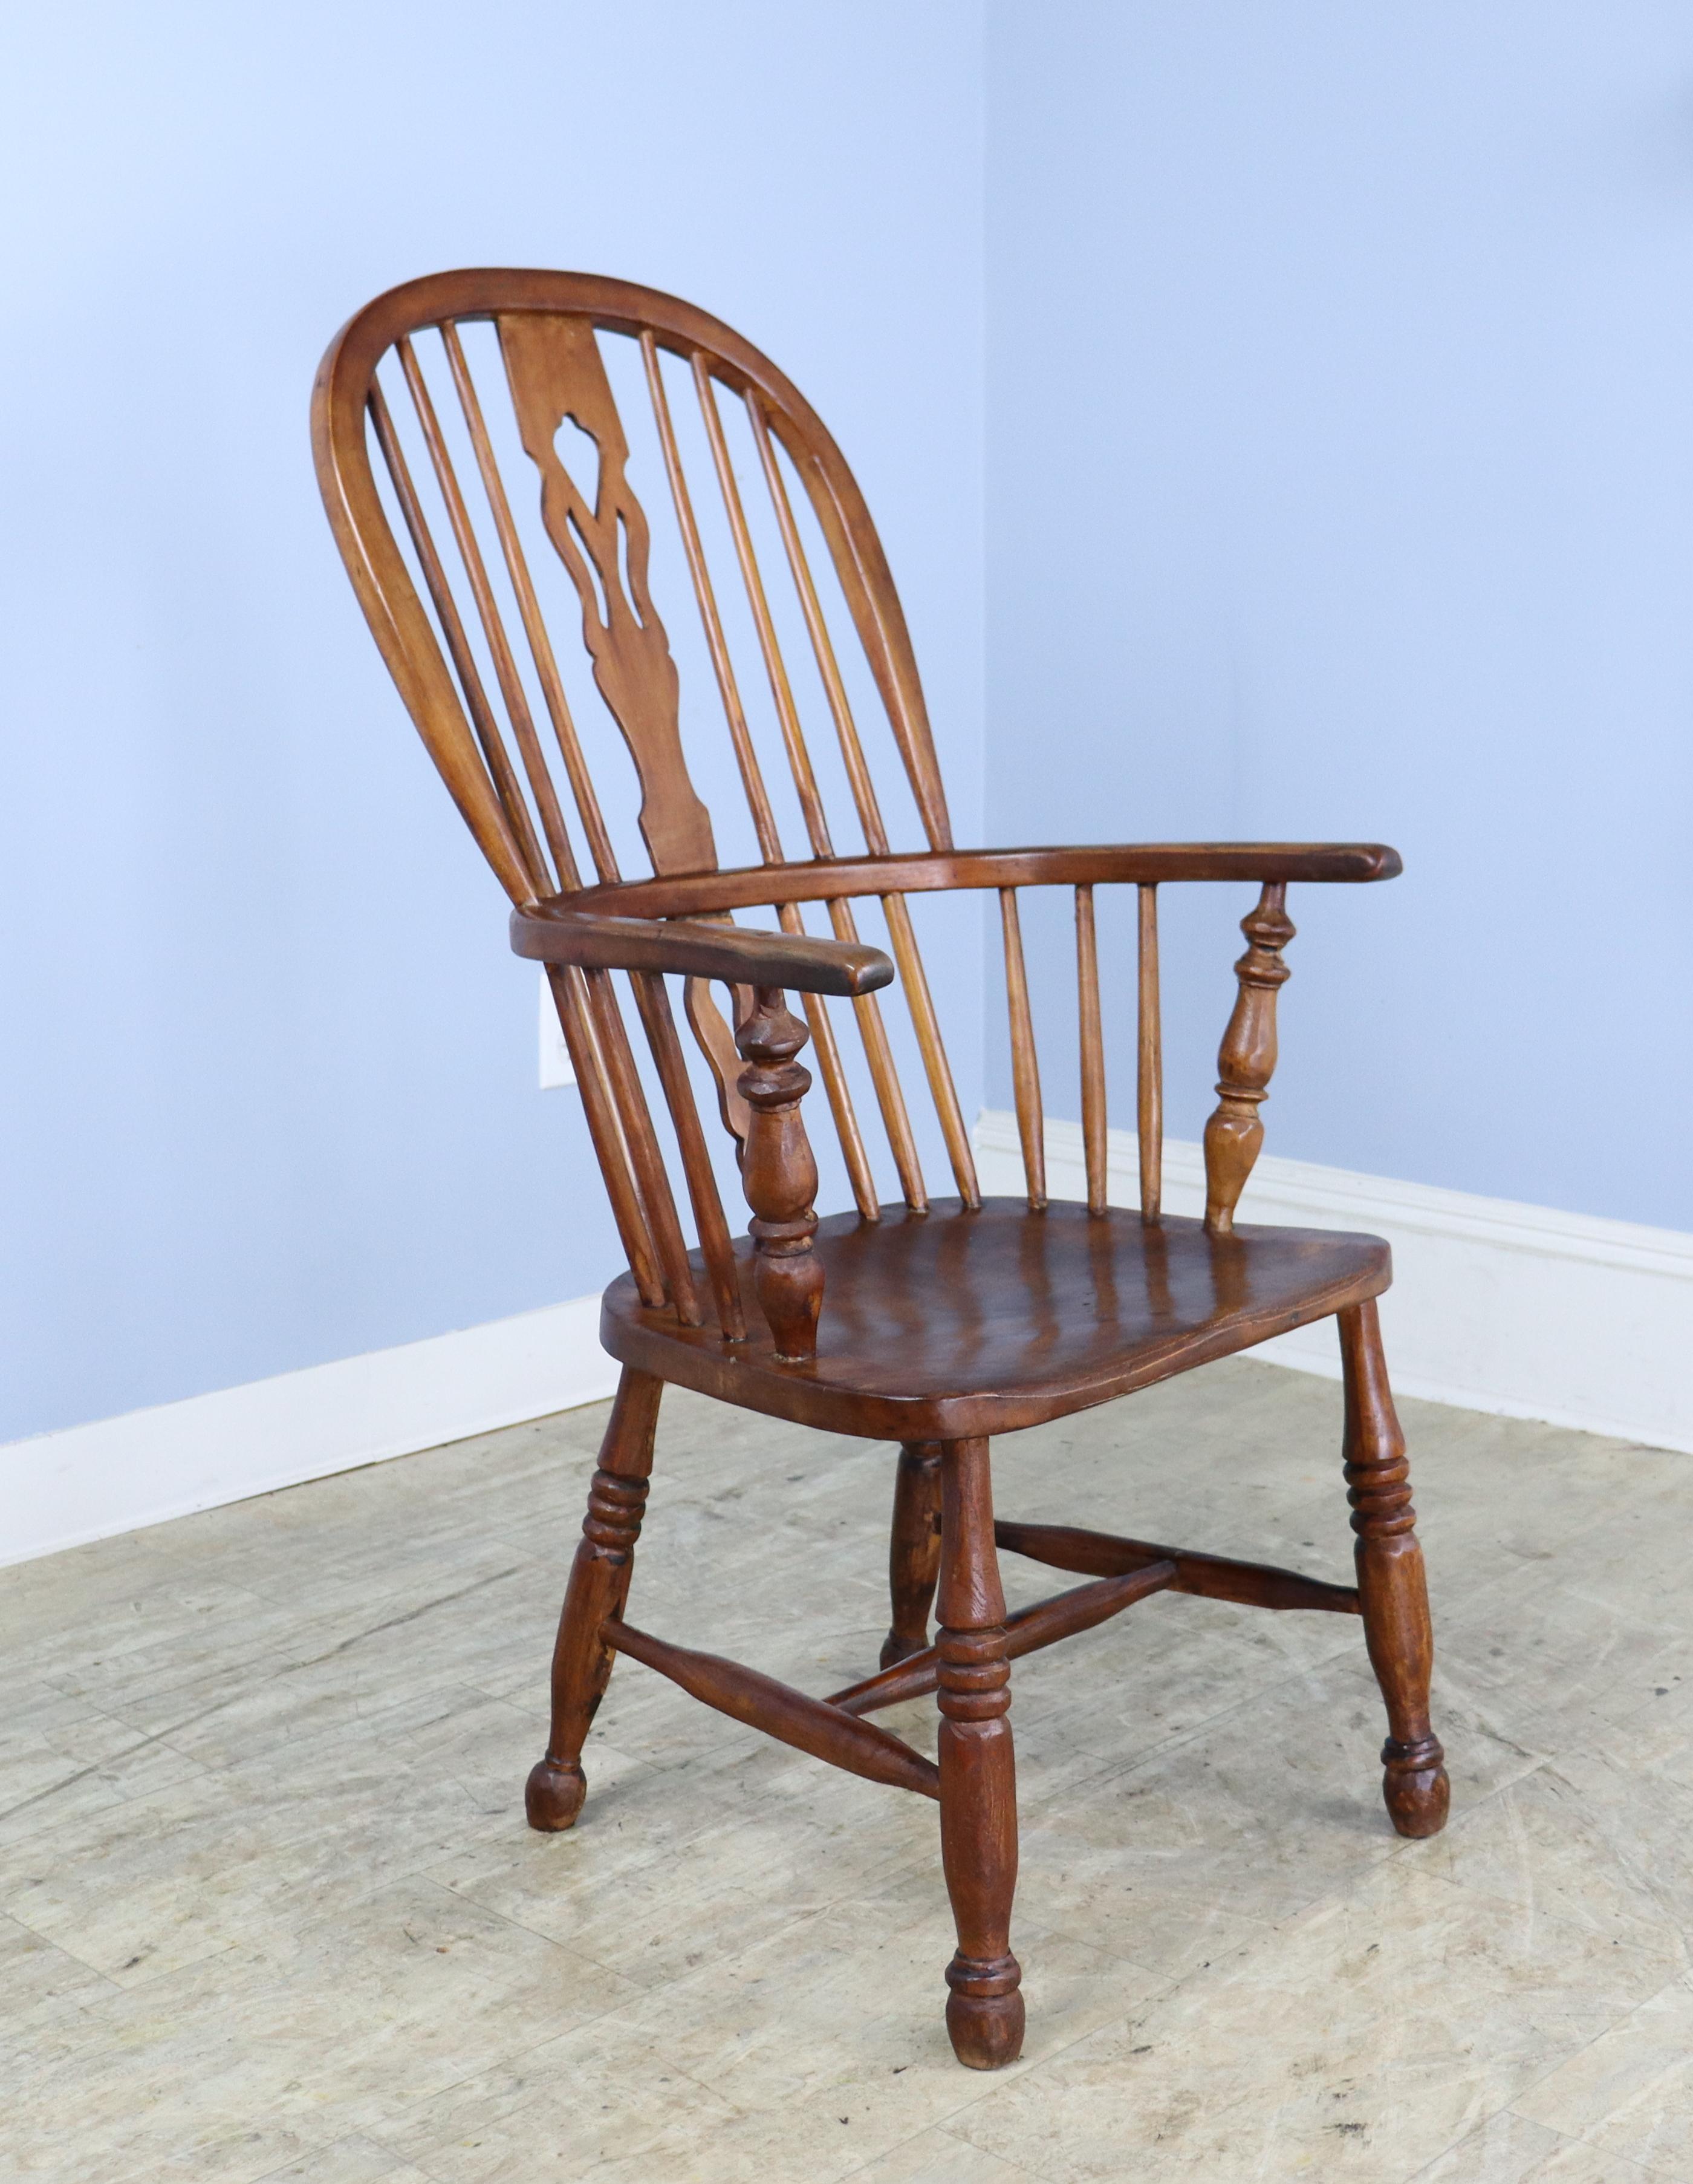 Une chaise Windsor classique en bois fruitier, sculptée à la main et raffinée. L'éclisse en forme de dos de violon rappelle les courbes d'un violon, typiques du style Queen Anne, bien que cette pièce date du milieu du XIXe siècle, donc d'une époque